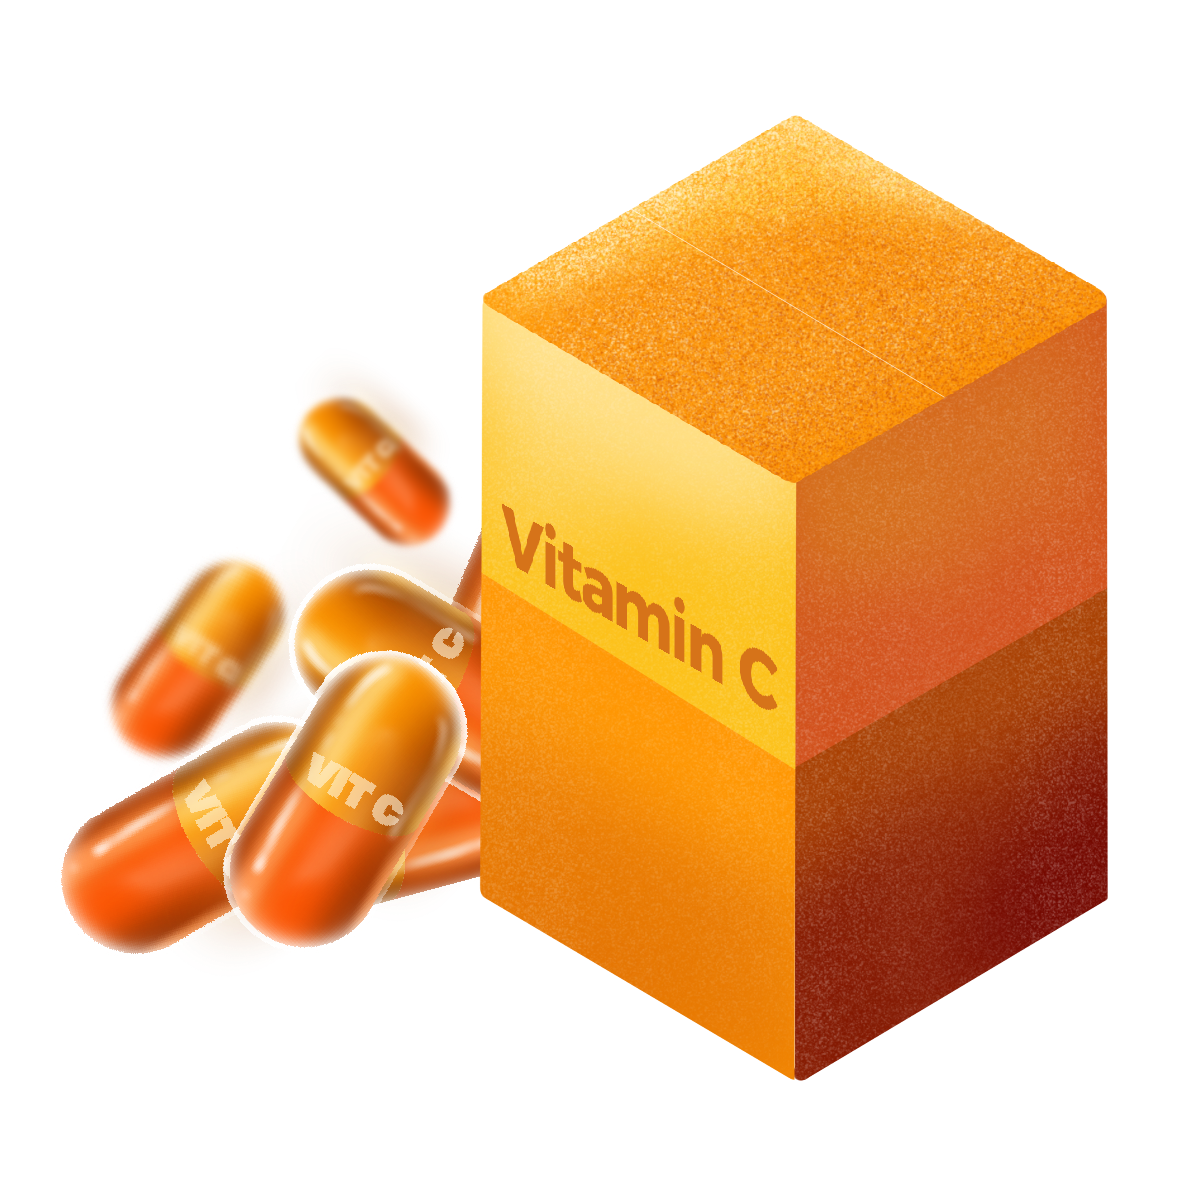 white Vitamin C or orange colored